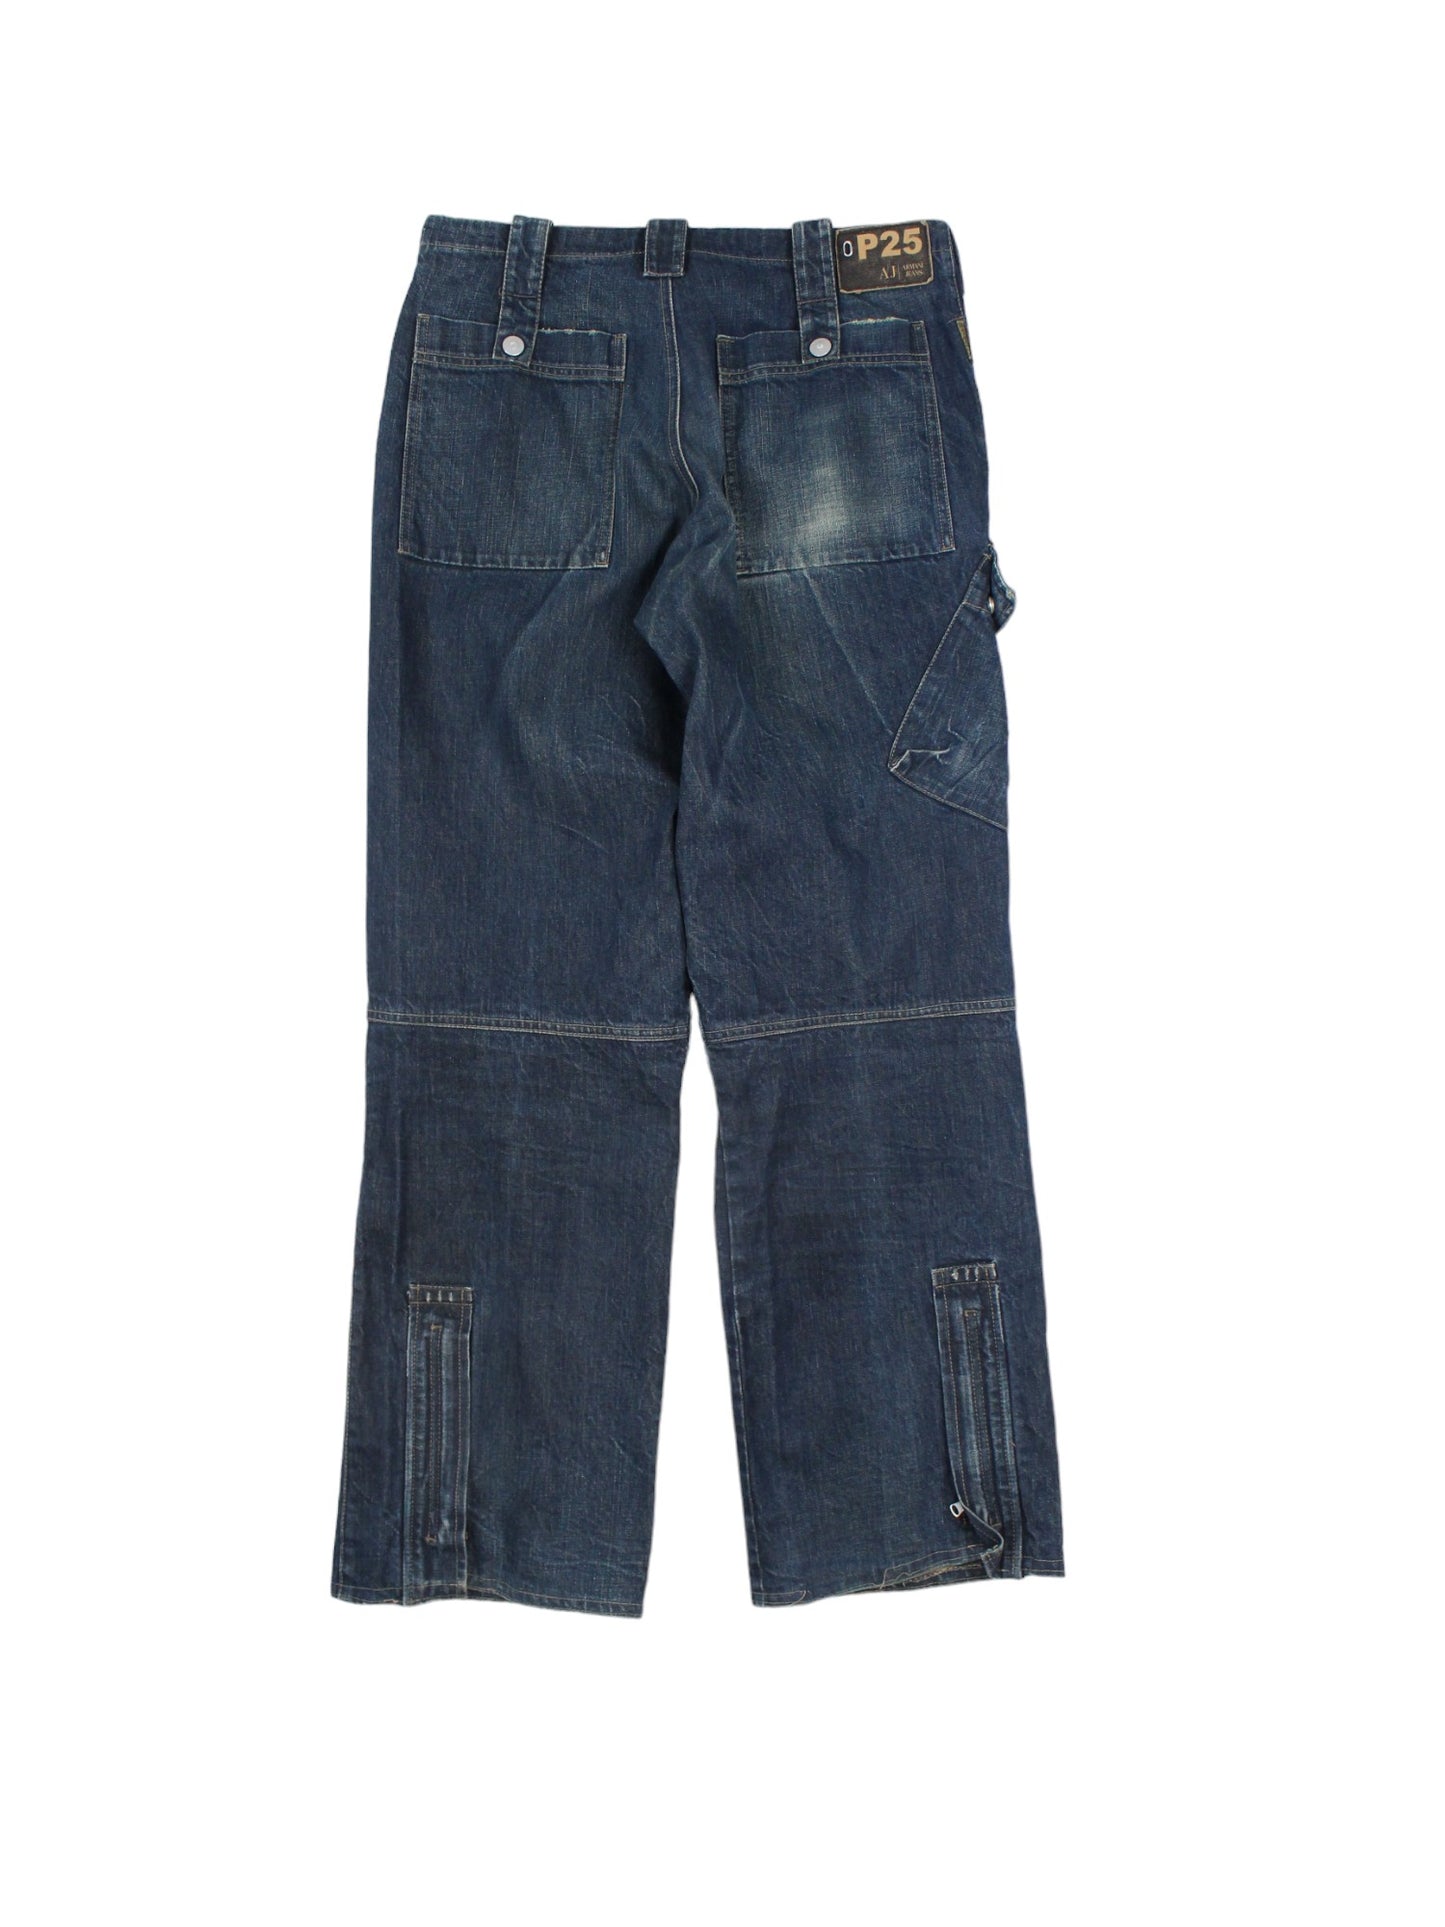 00s Armani Jeans Heavy Denim (W34" X L32")